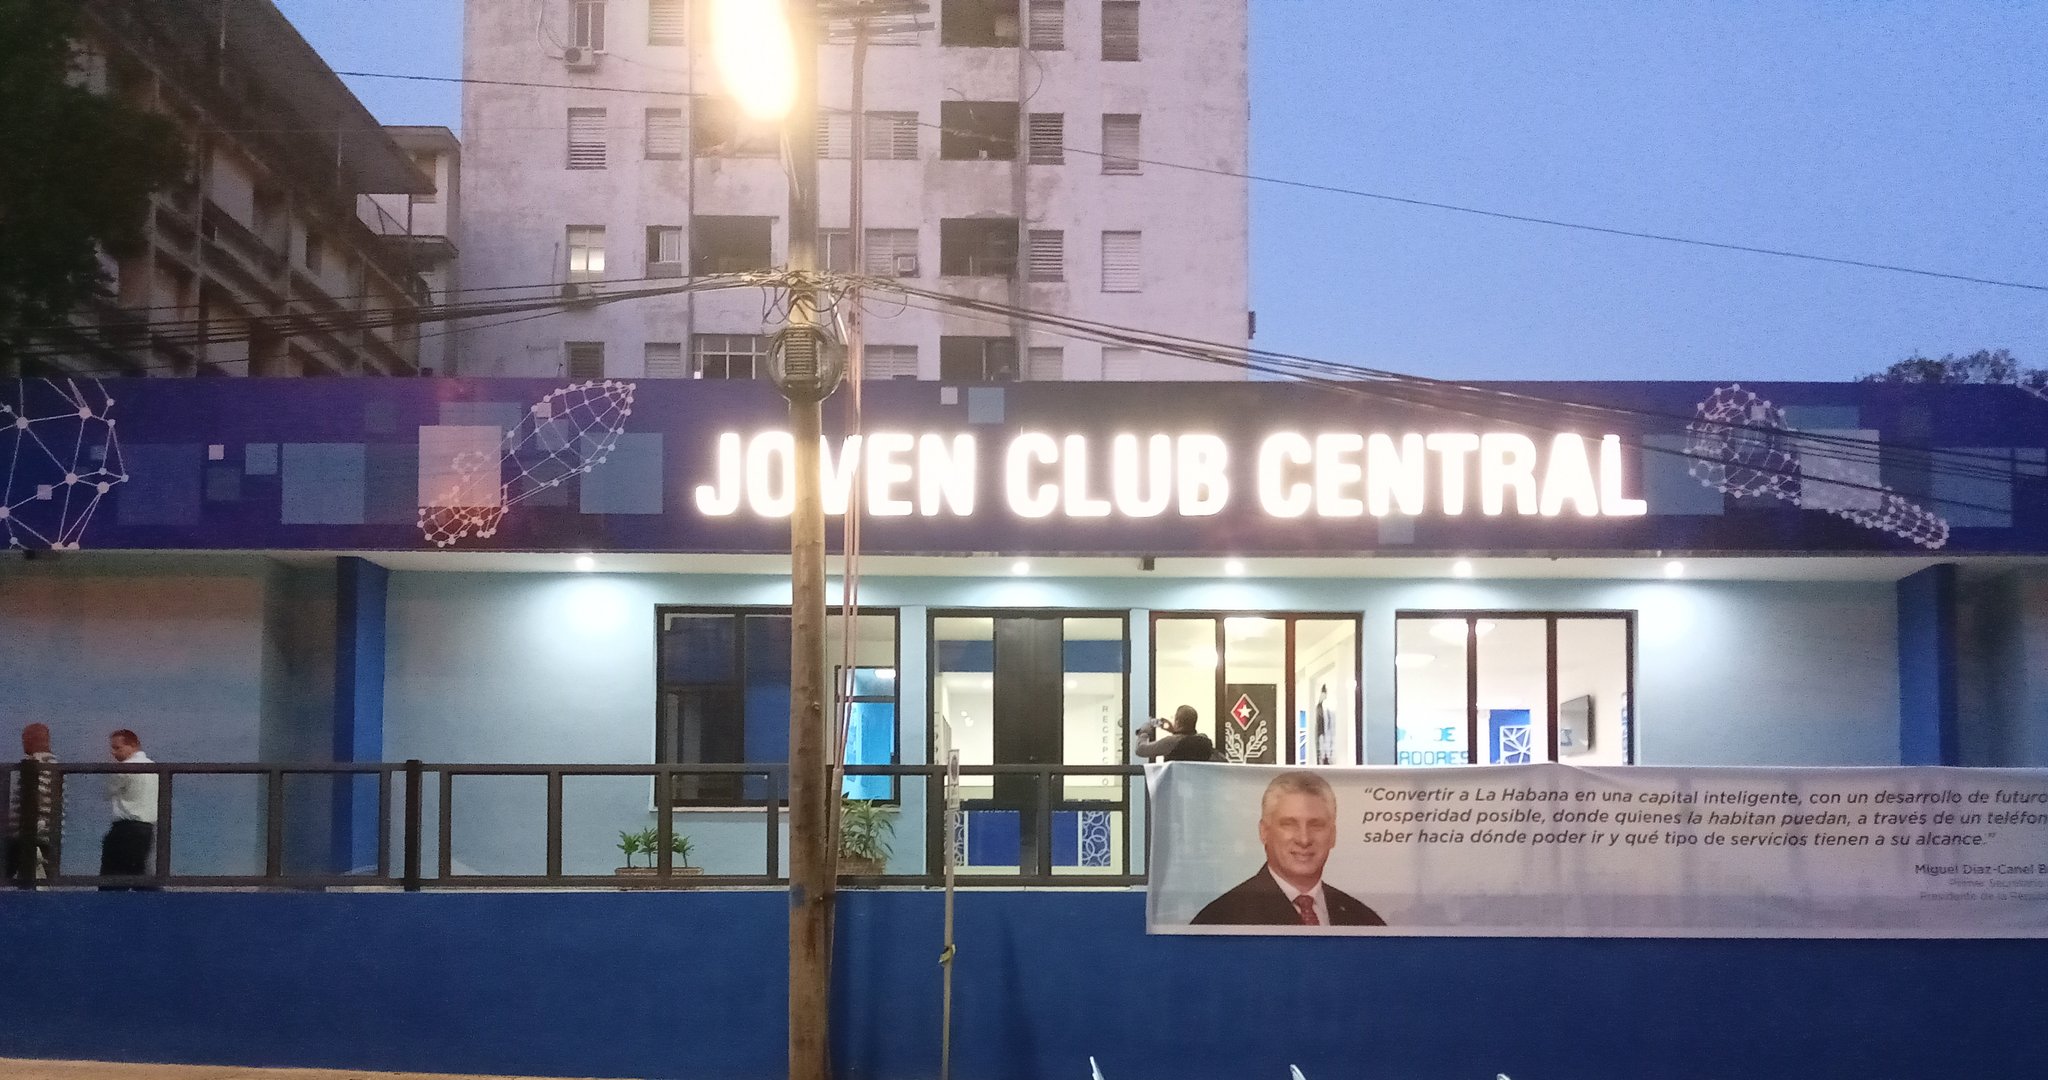 Celebró Joven Club su 35 Aniversario y reinaguró su primer Joven Club